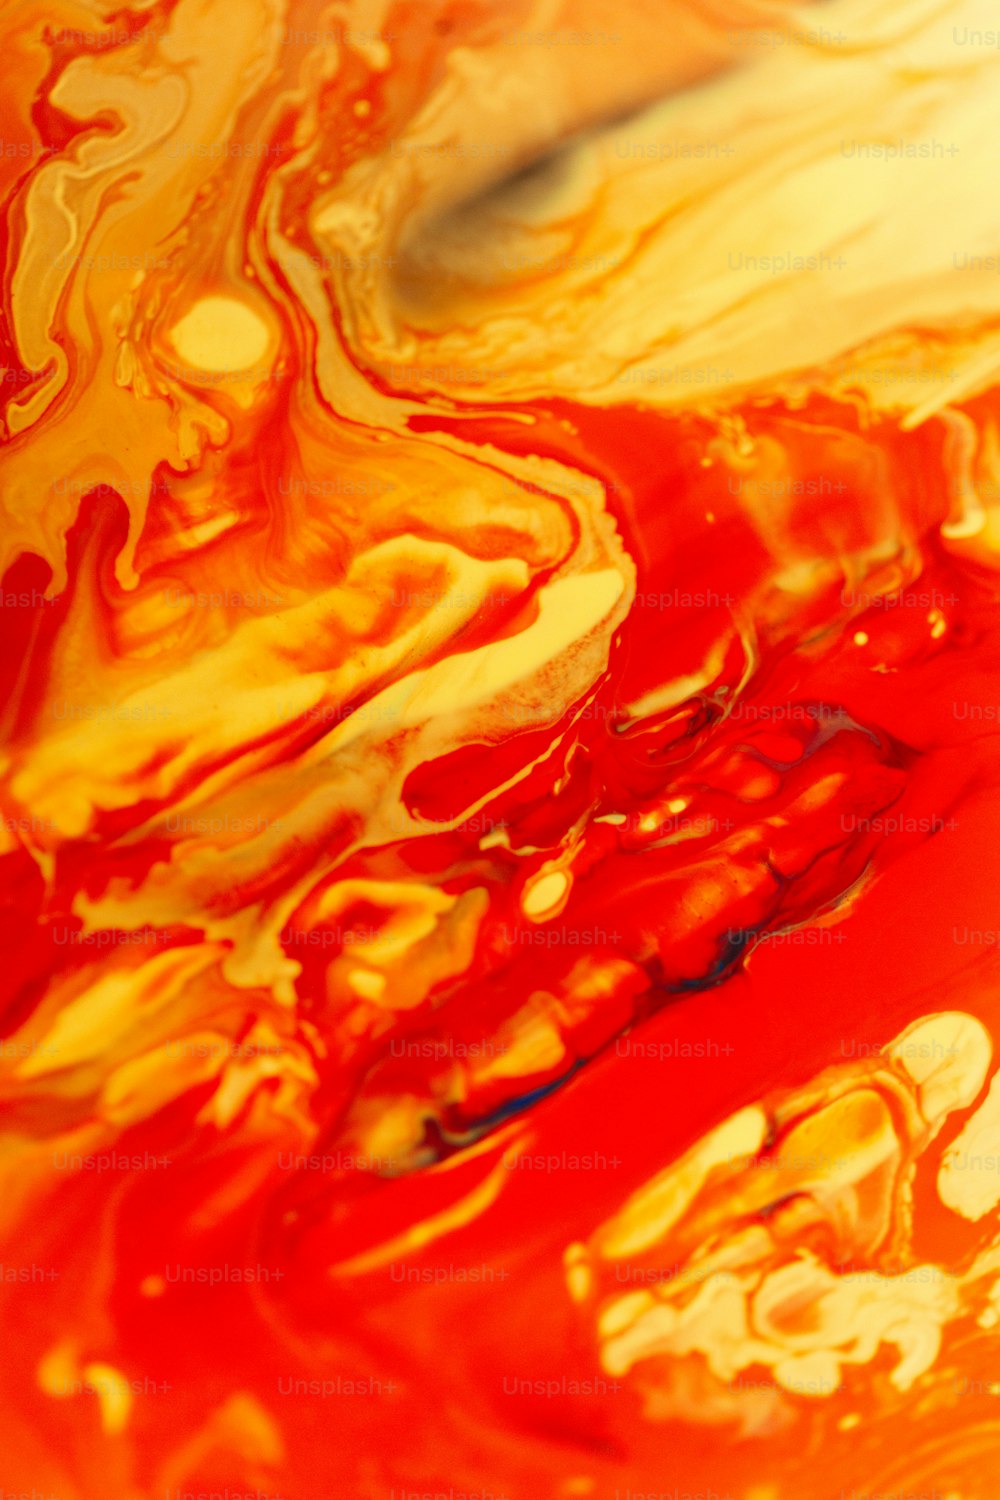 um close-up de um líquido vermelho